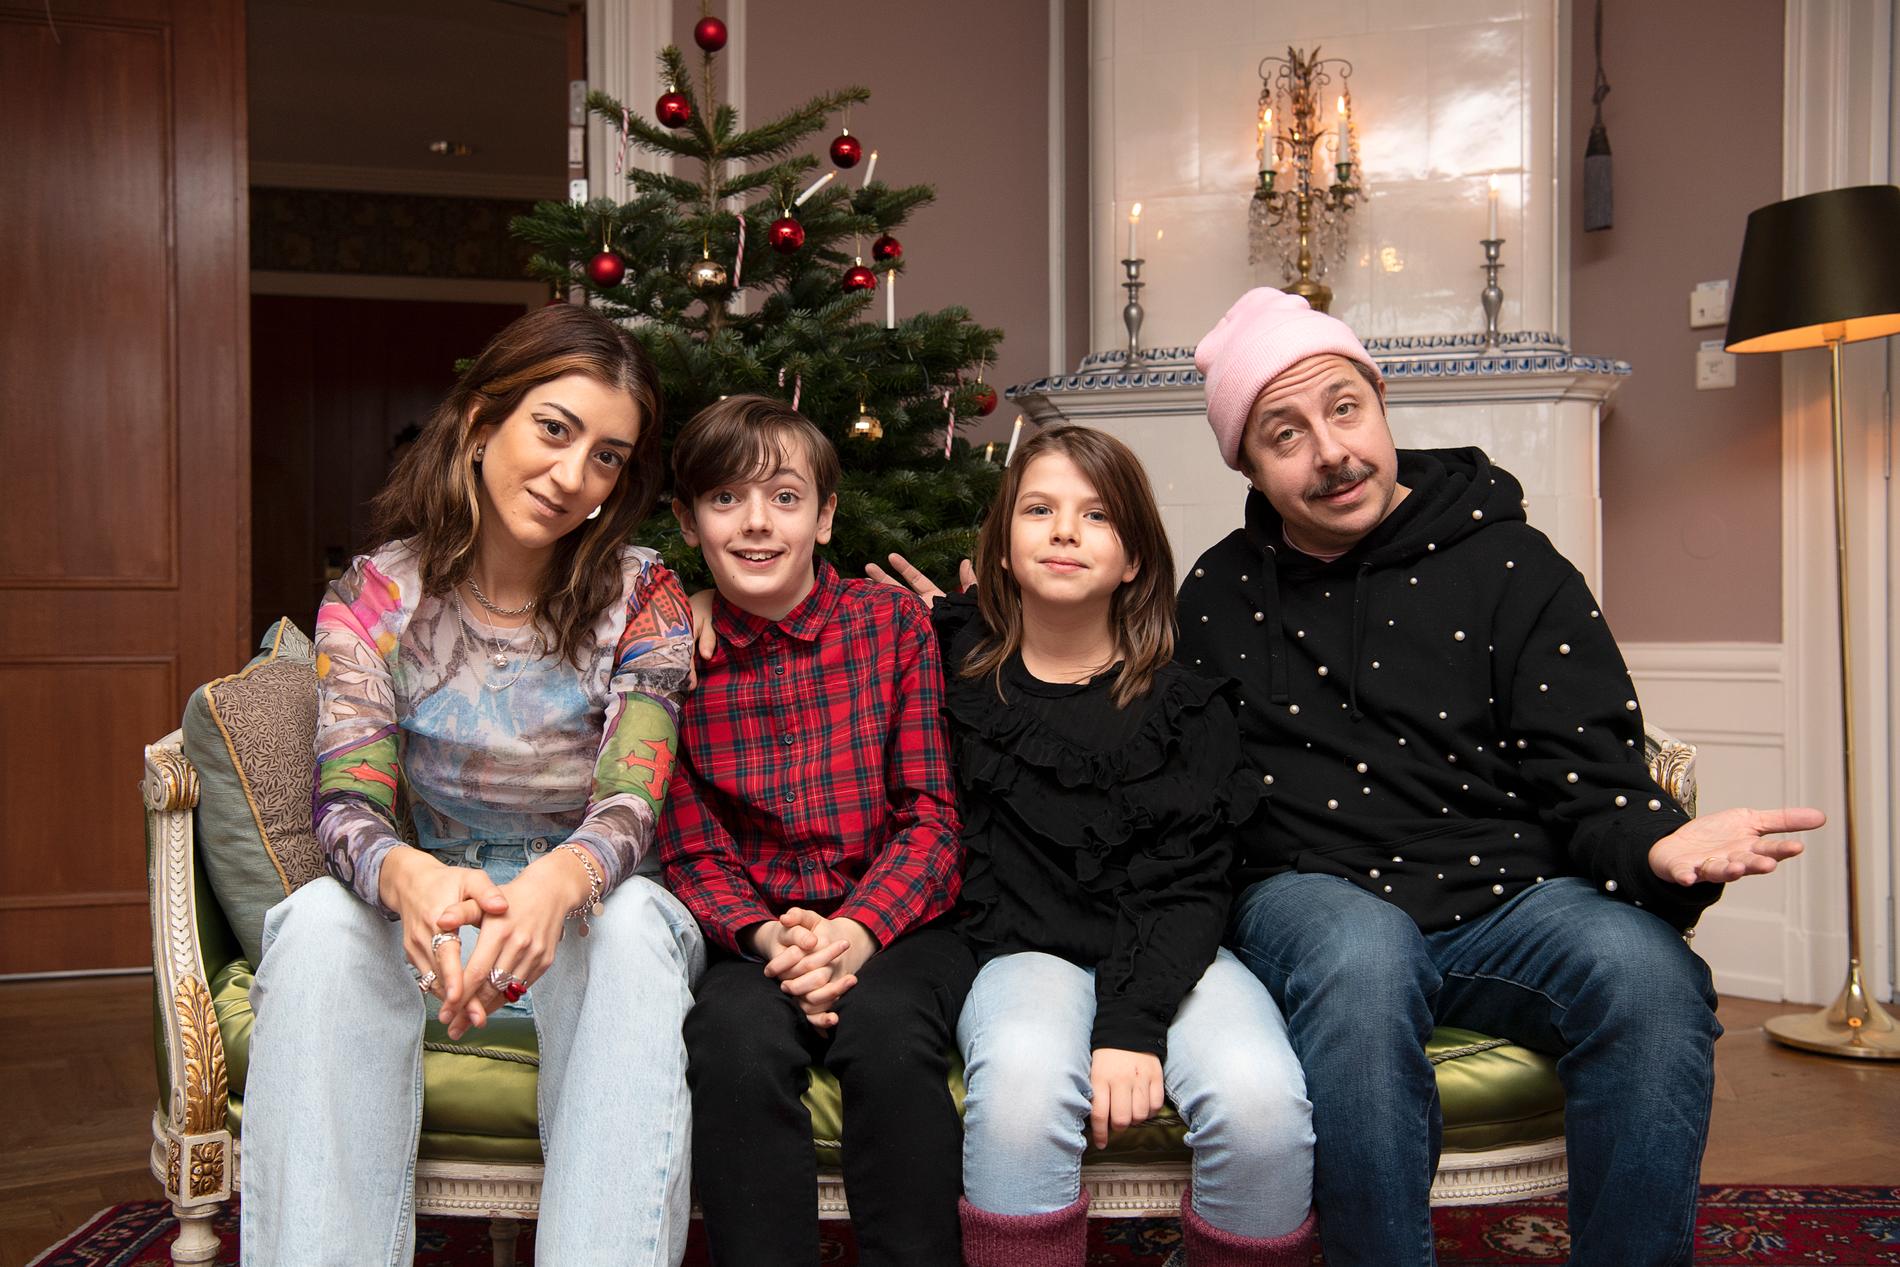 Gizem Erdogan, Axel Adelöw, Paloma Grandin och David Sundin är familjen Knyckertz i SVT:s julkalender 2021.